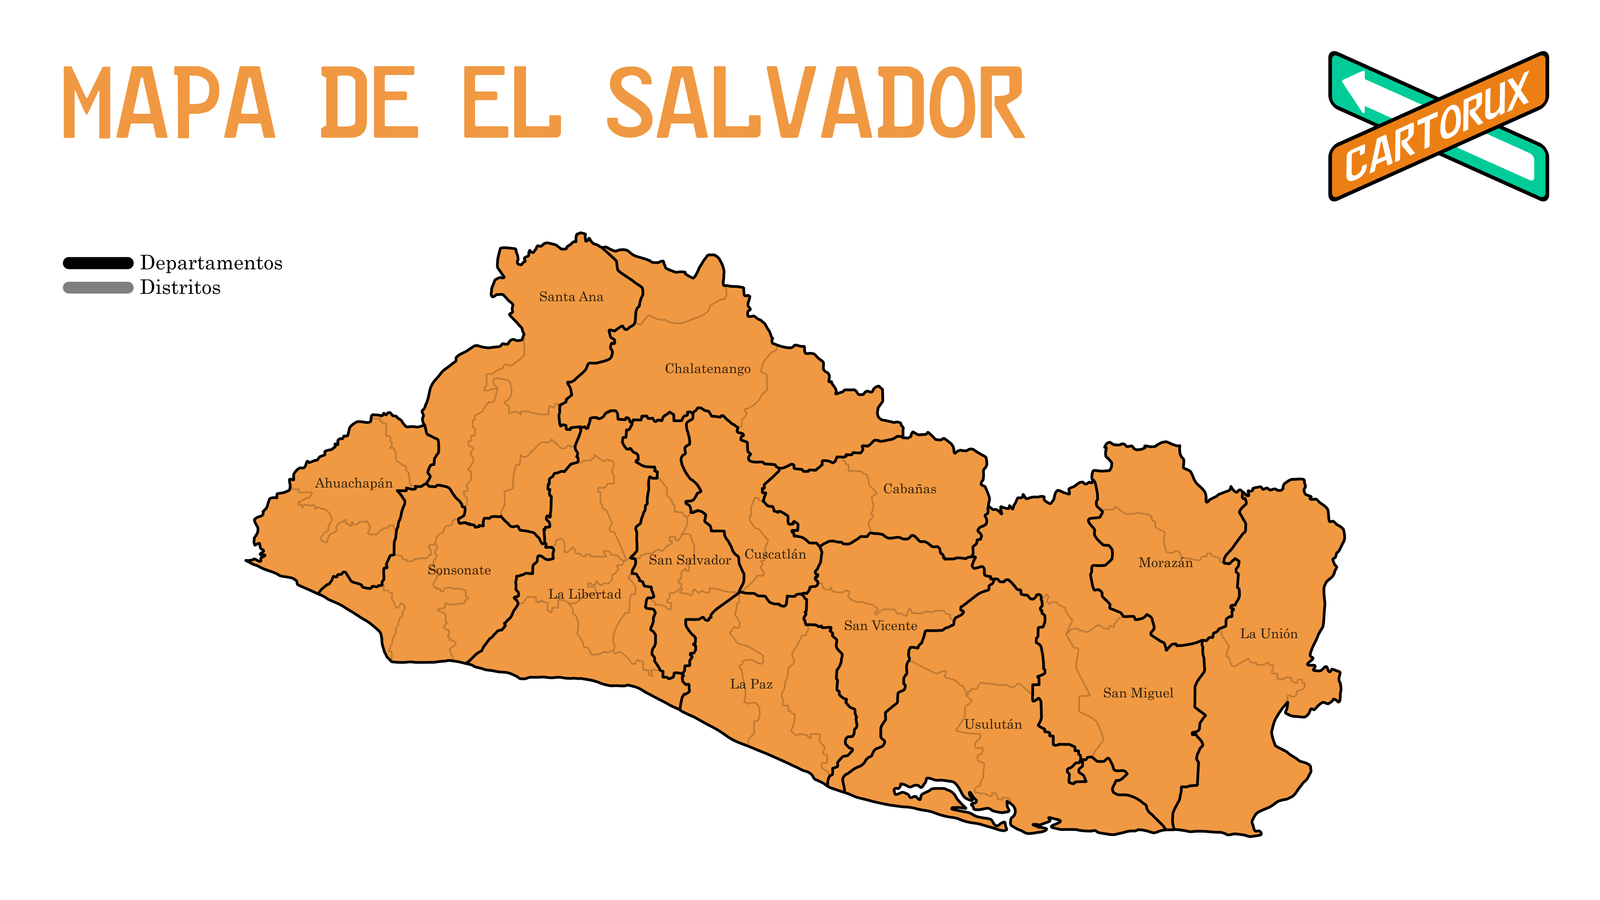 Mapa de El Salvador, departamentos y distritos